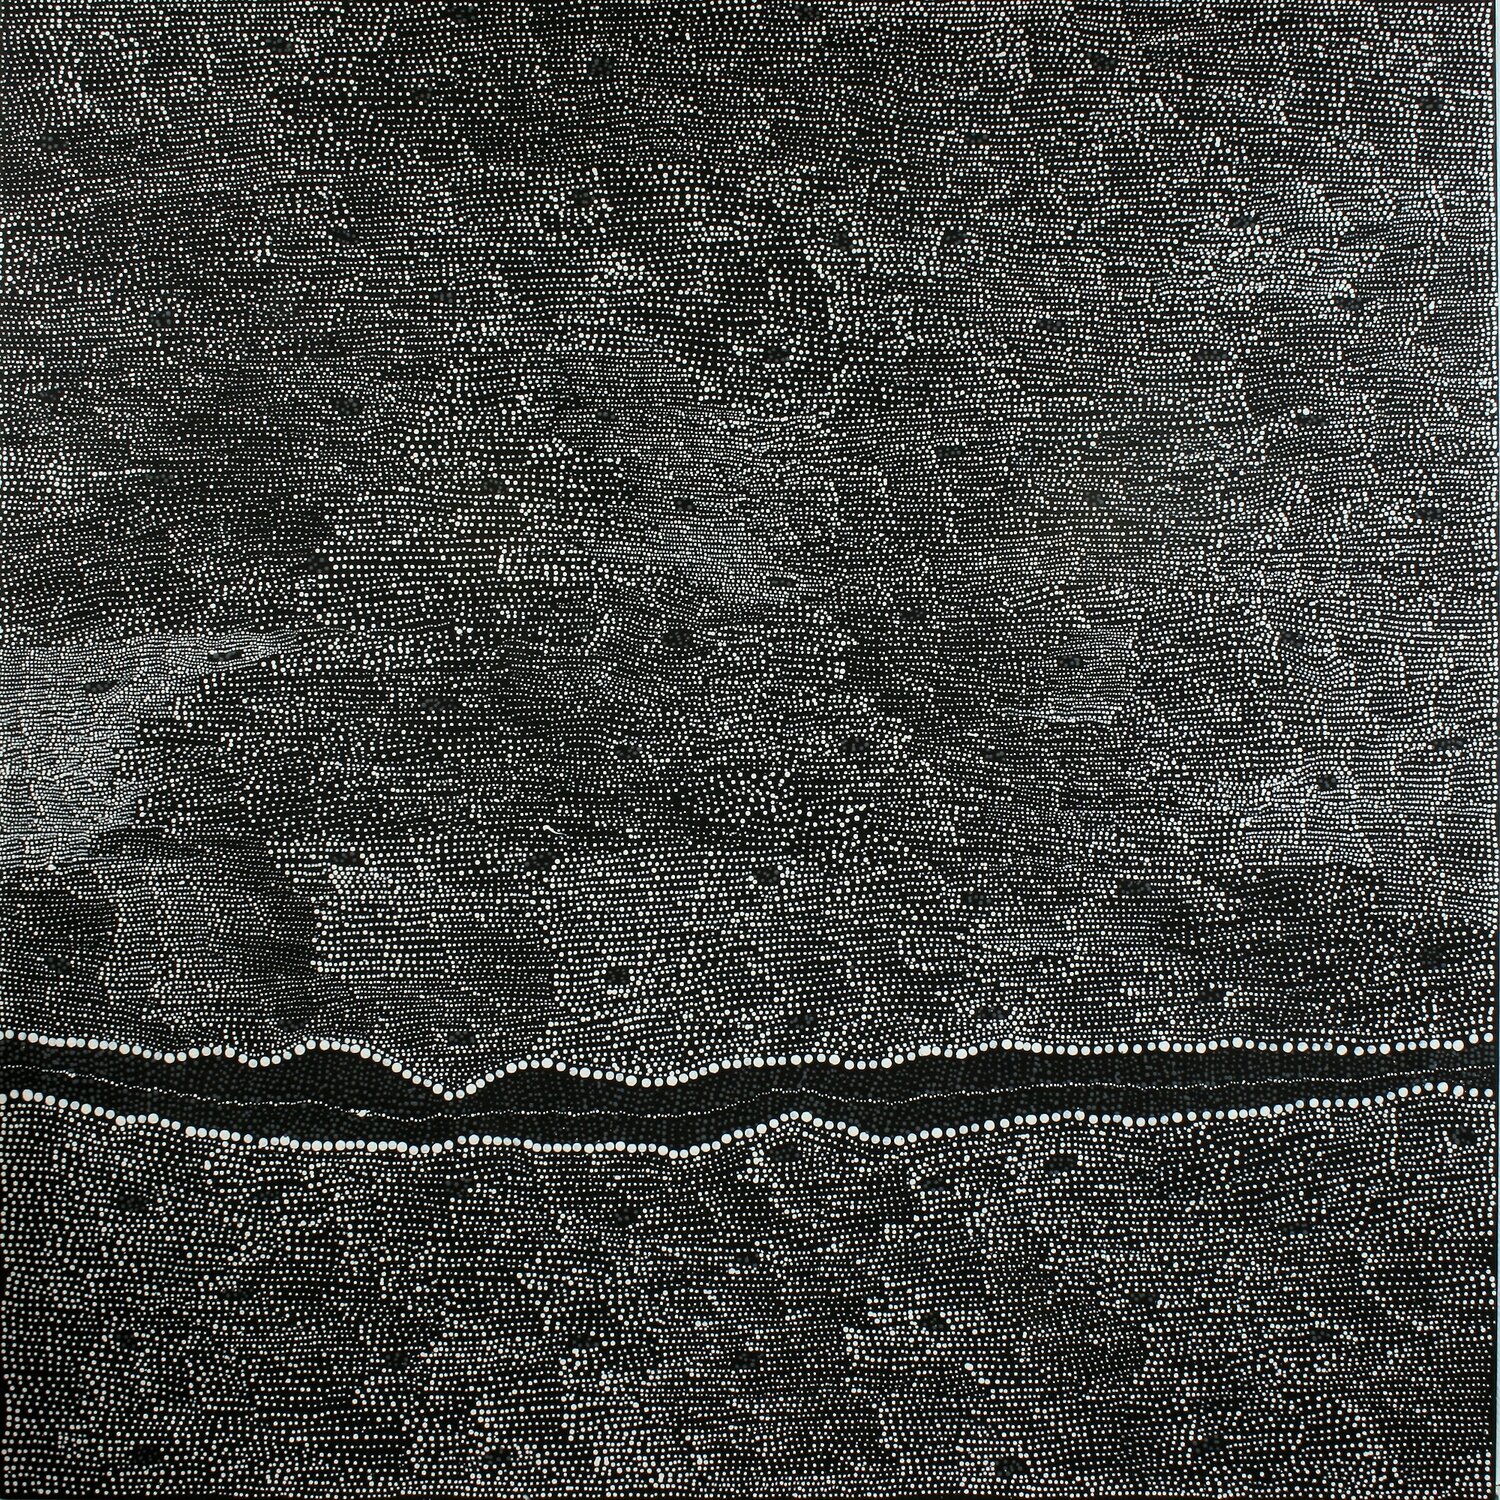 Pirlinyanu, 2011 by Julie Nangala Robertson, 152x152cm 14012JR